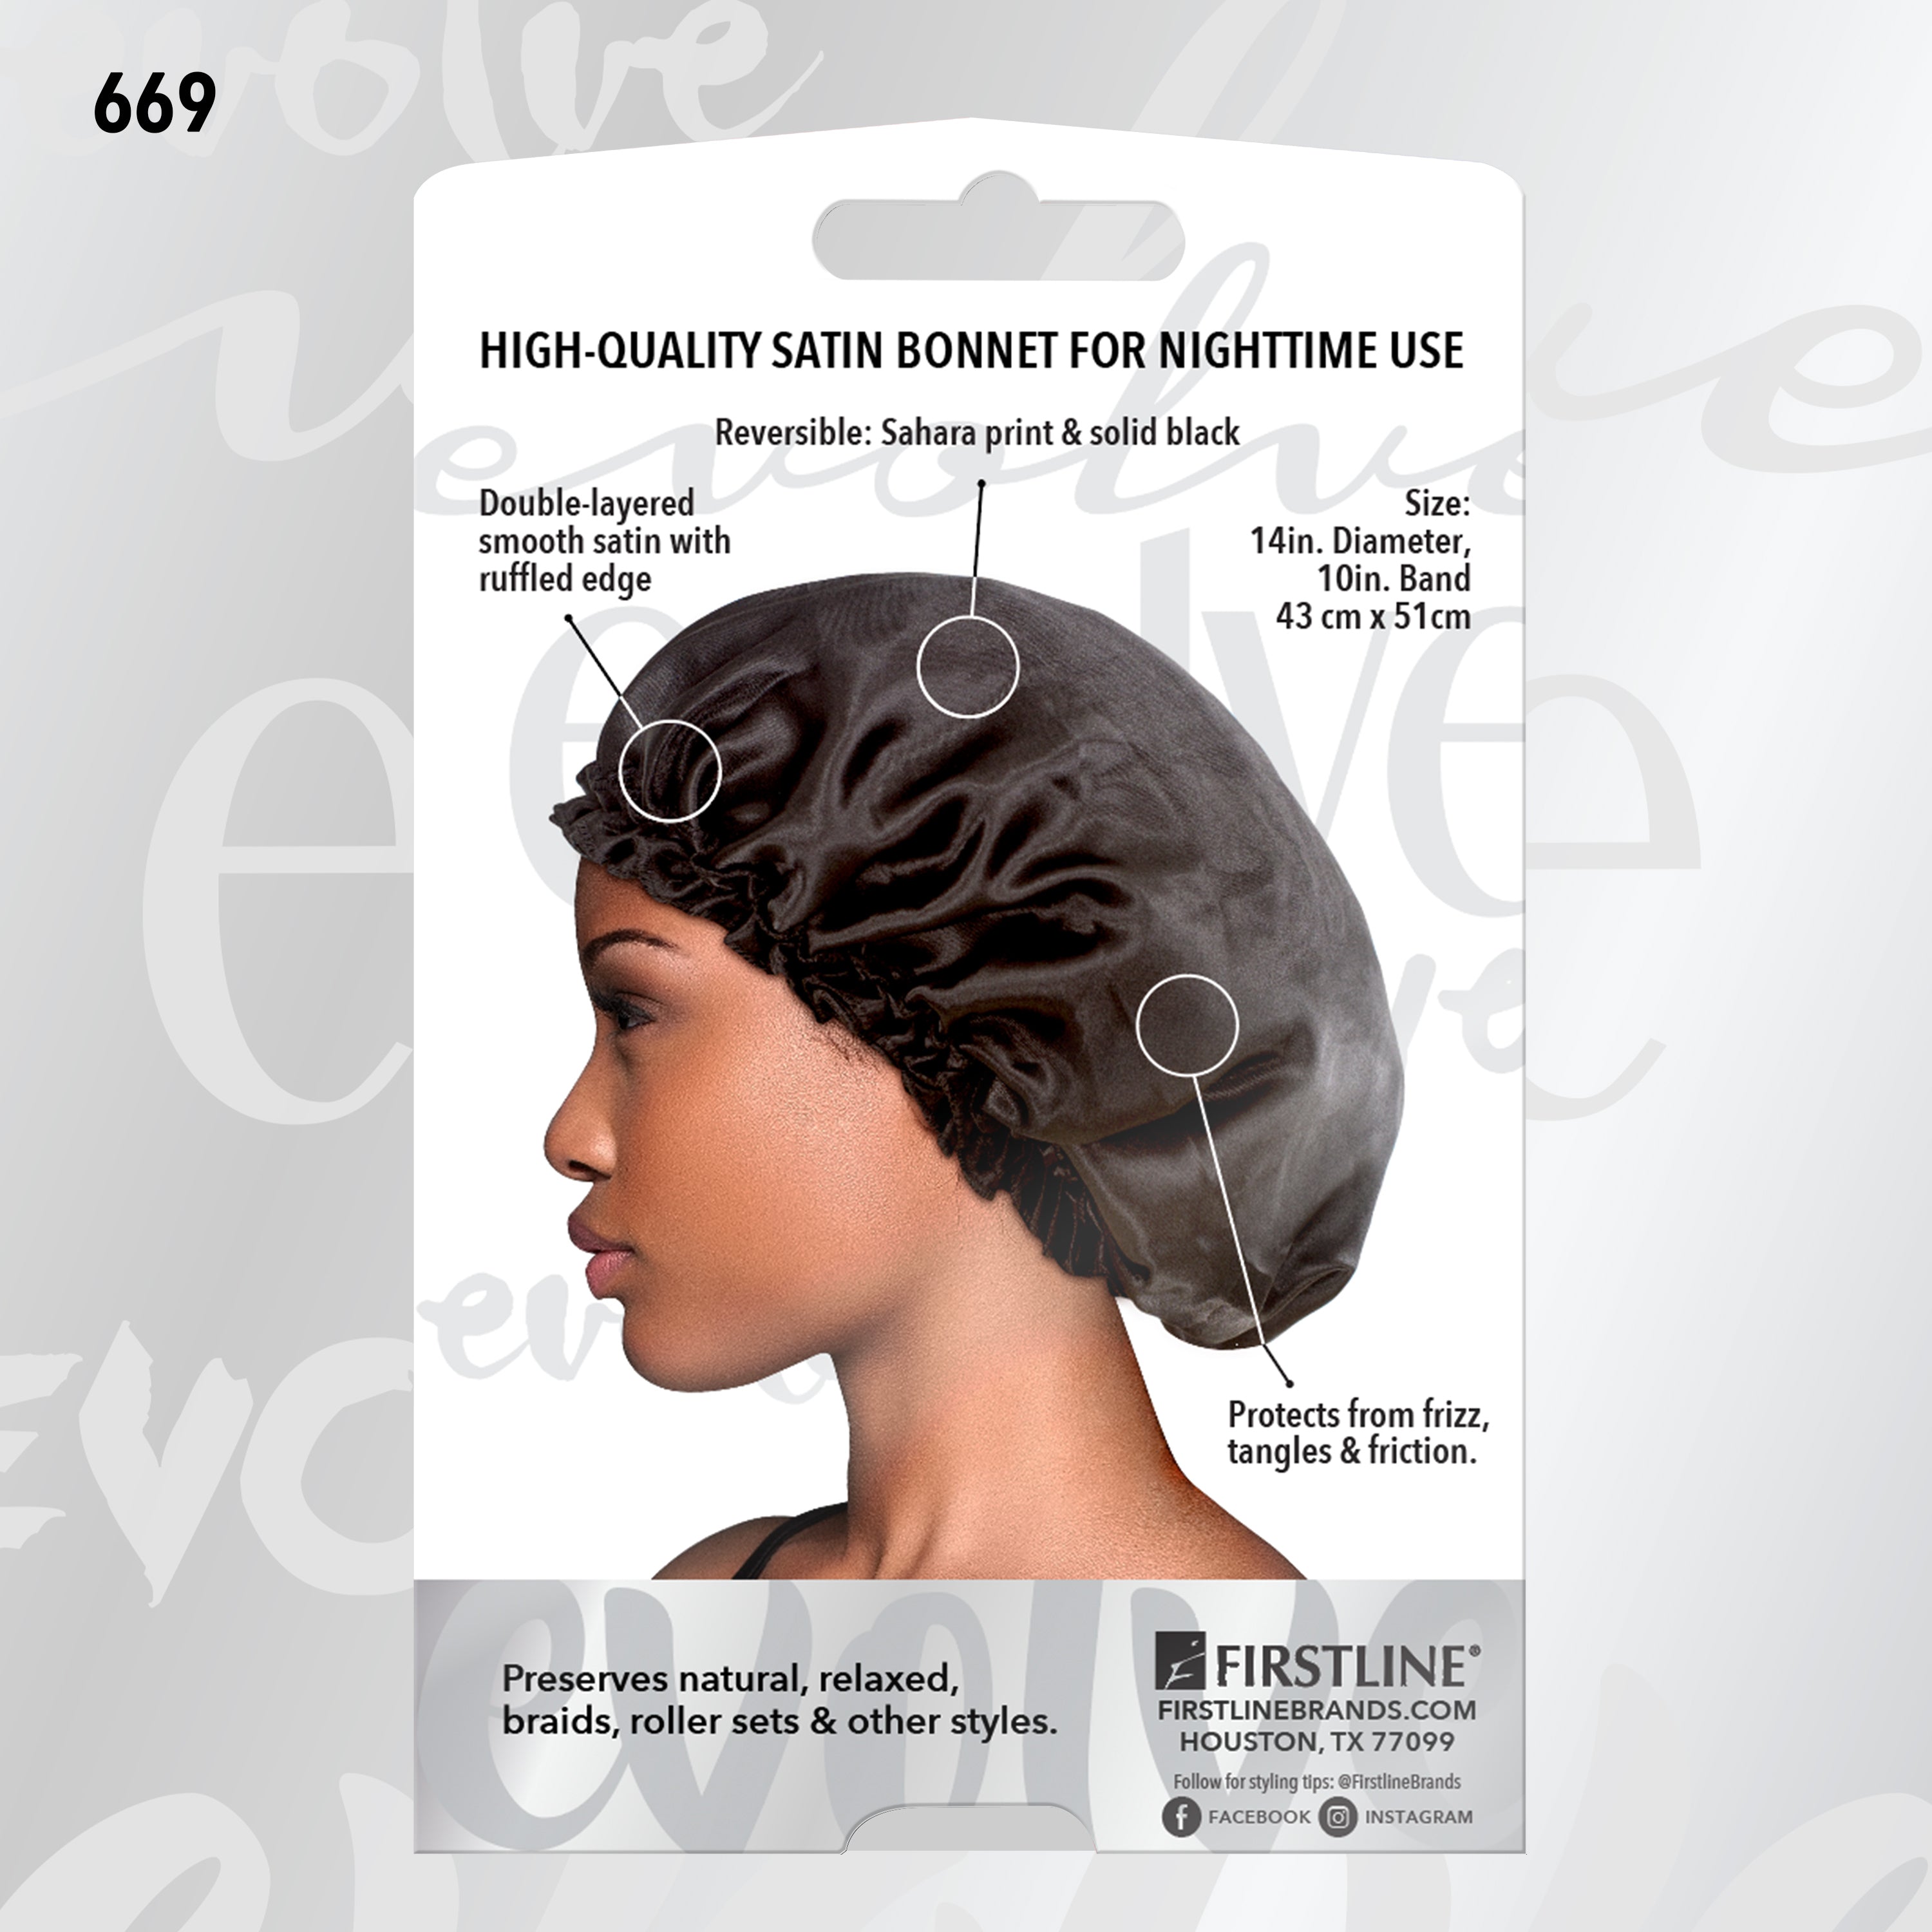 Evolve® Satin Reversible Bonnets, Firstline Brands – 669 Sahara